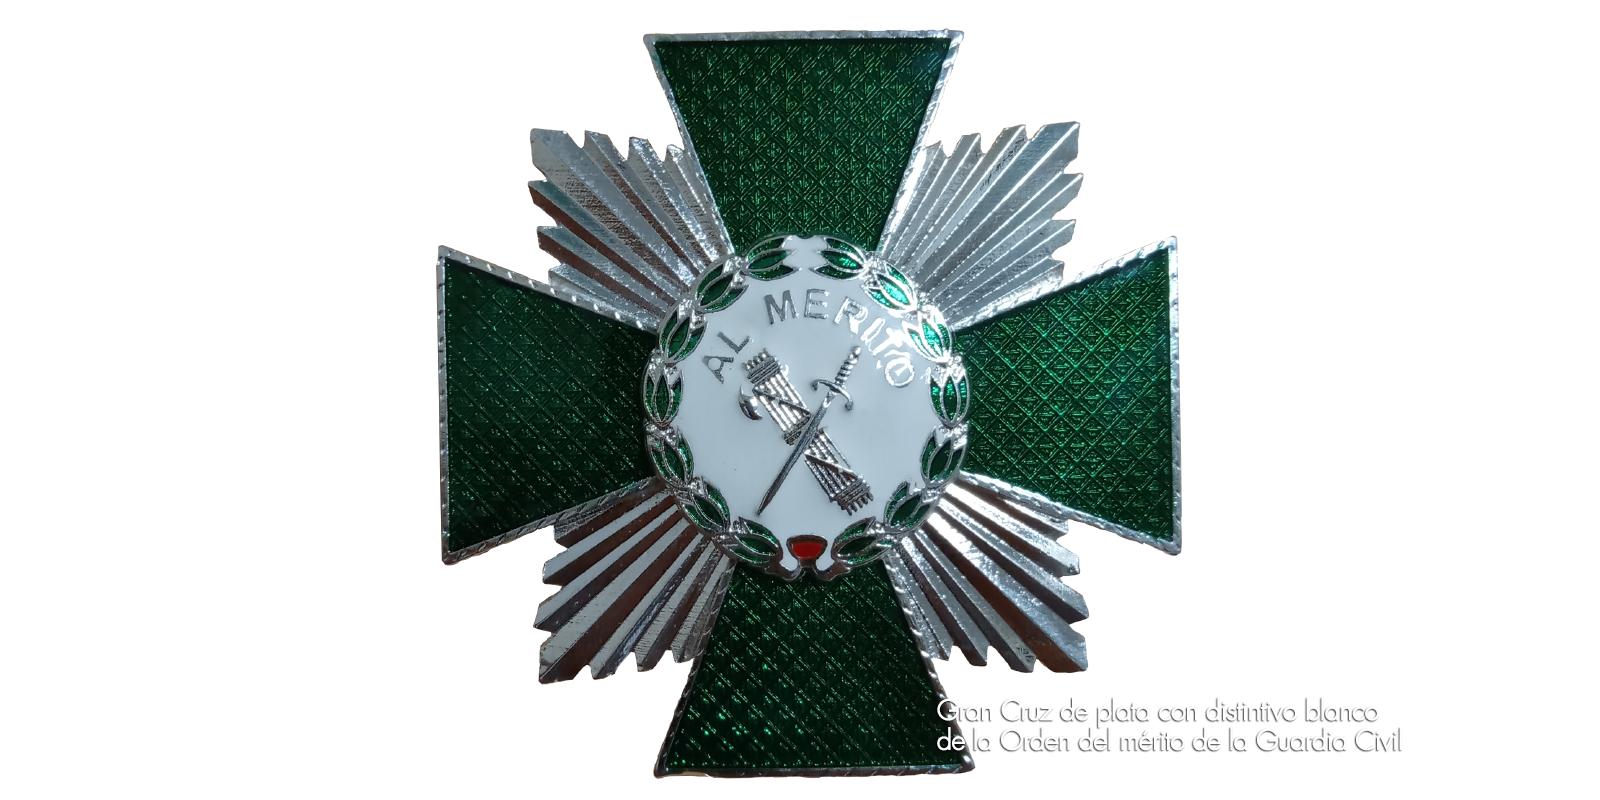 Gran Cruz de plata con distintivo blanco de la Orden del mérito de la Guardia Civil